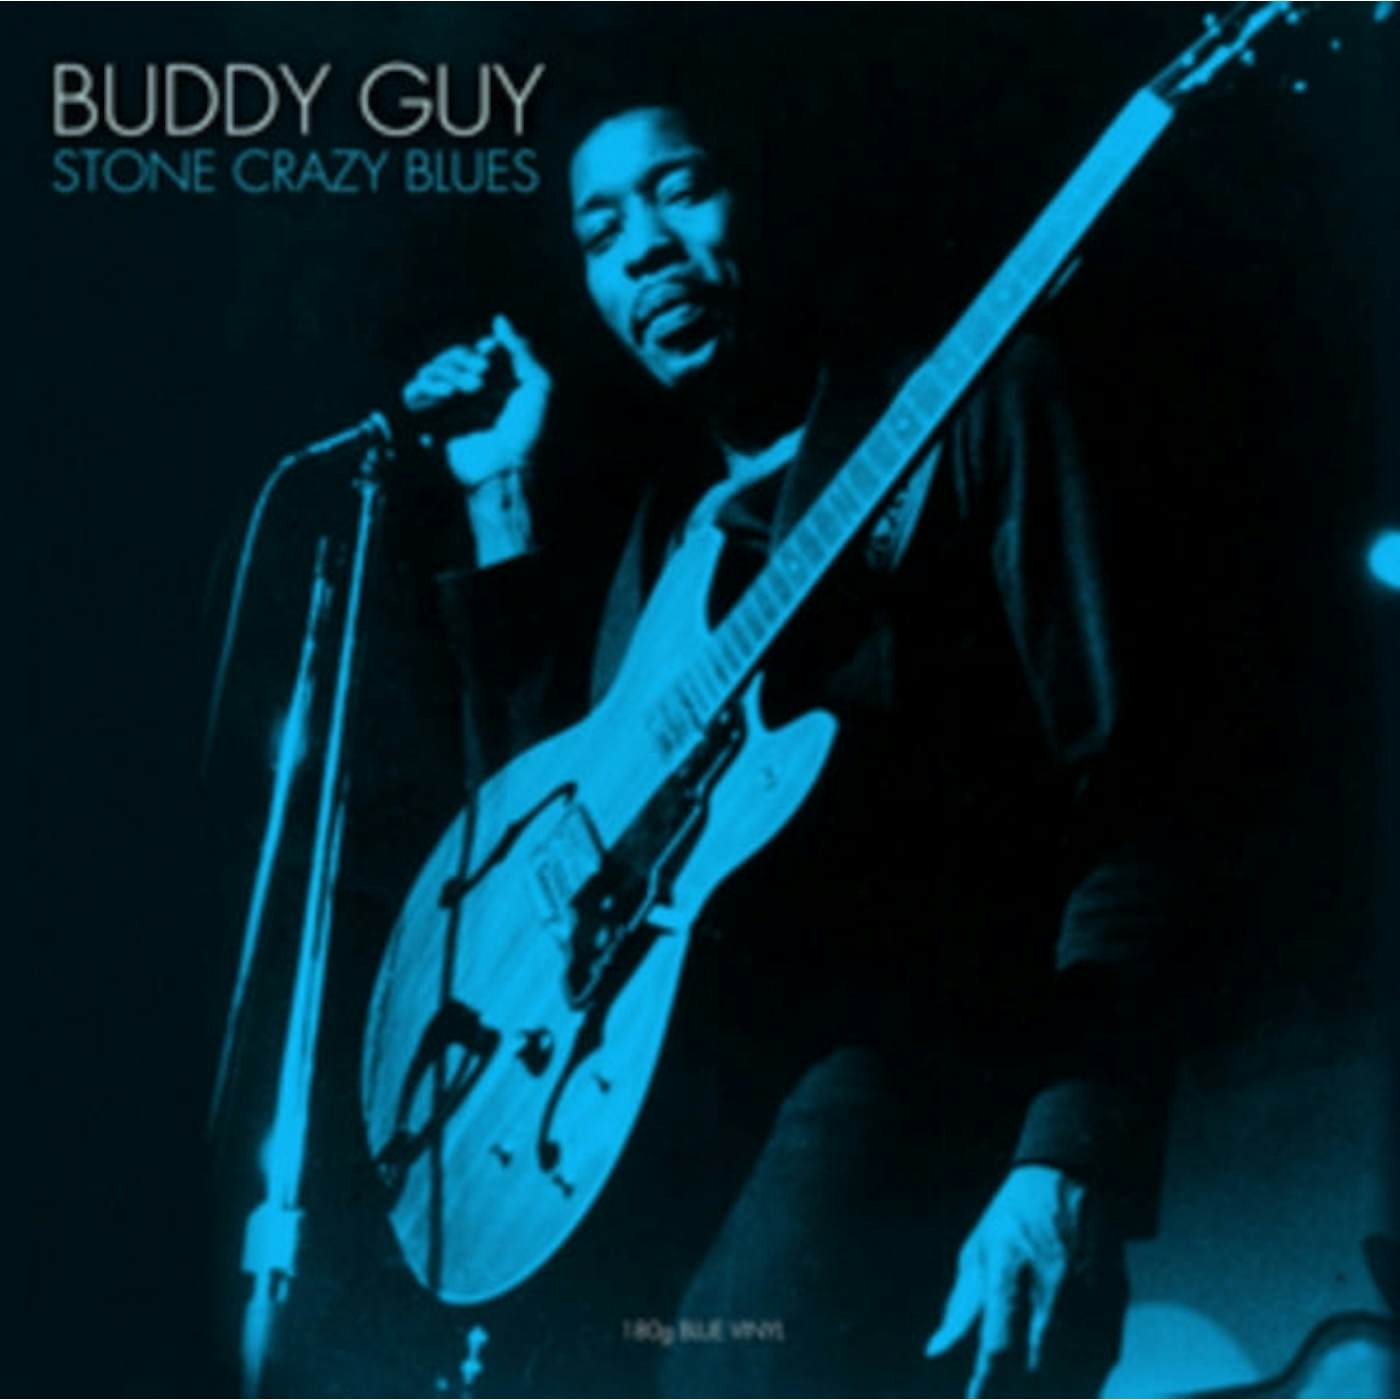 Buddy Guy LP Vinyl Record - Stone Crazy Blues (Blue Vinyl)